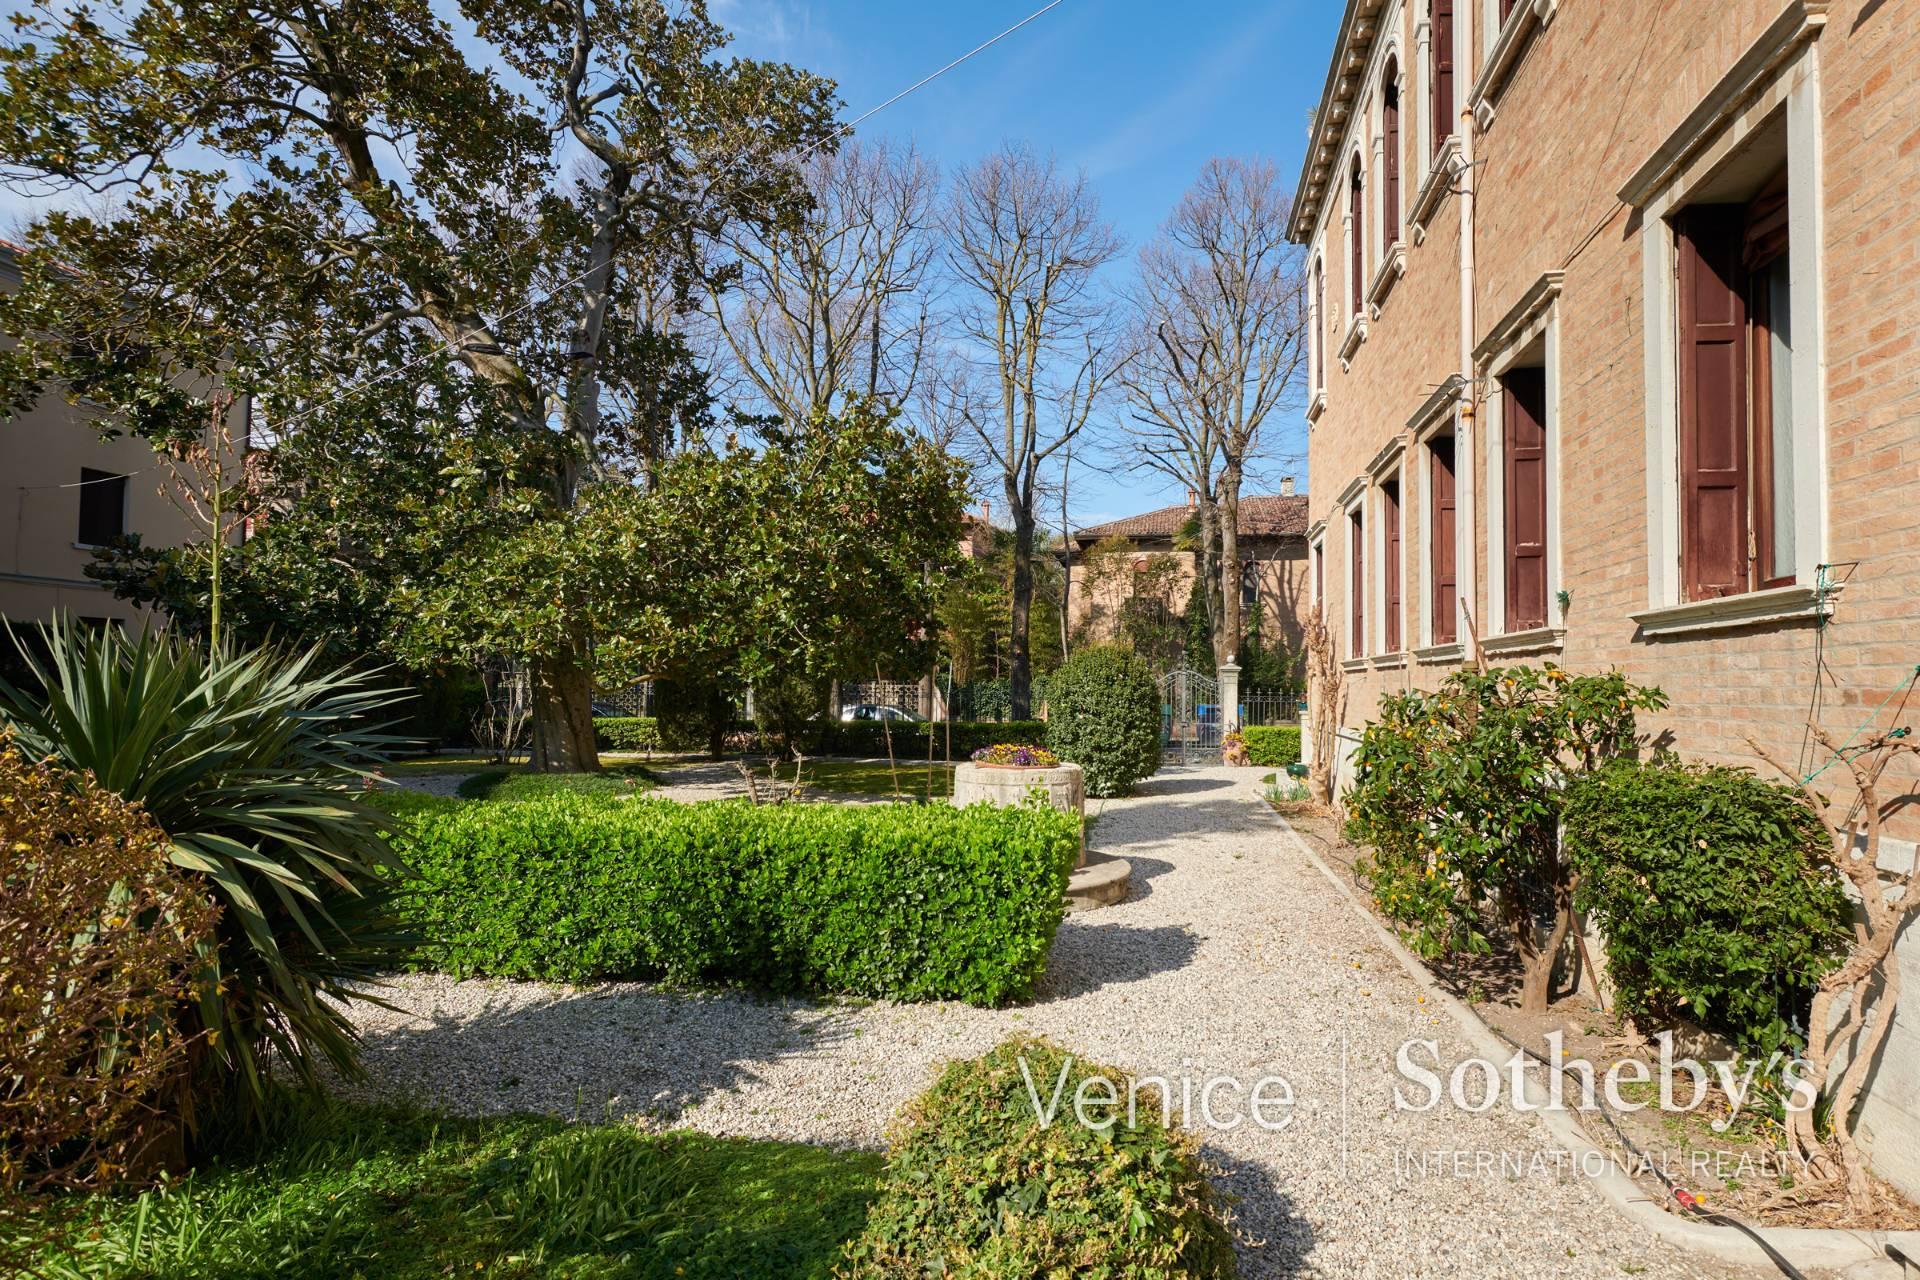 Une villa Liberty classique dans un endroit calme mais super central avec de beaux jardins et terrasses - 2